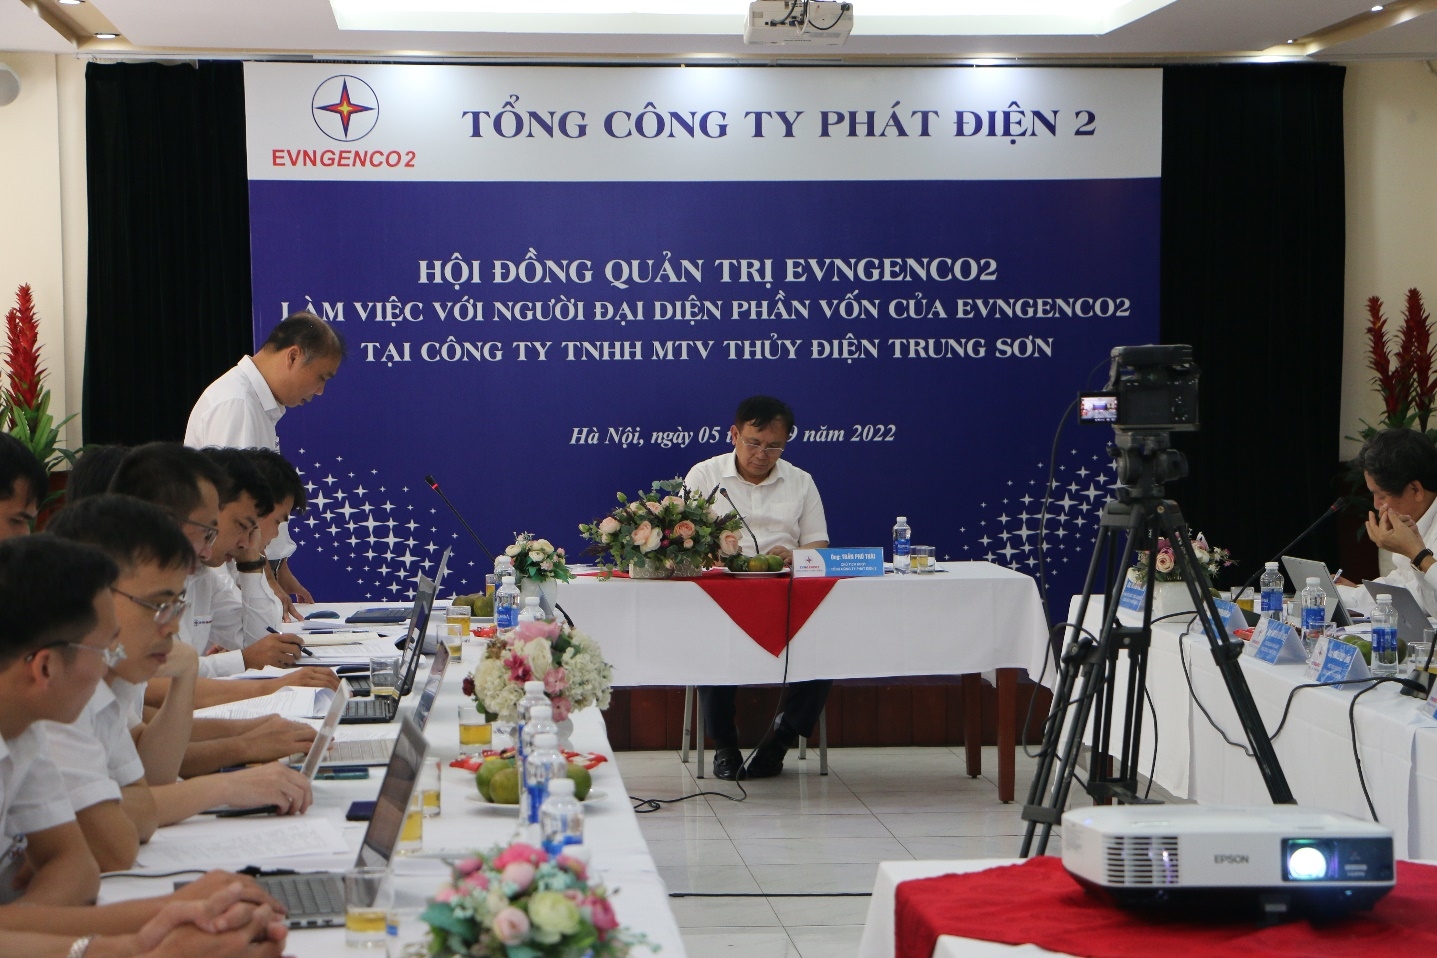 Hội đồng quản trị EVNGENCO2 làm việc với người đại diện phần vốn của EVNGENCO2 tại Công ty TNHH MTV Thủy điện Trung Sơn (TSHPCo)